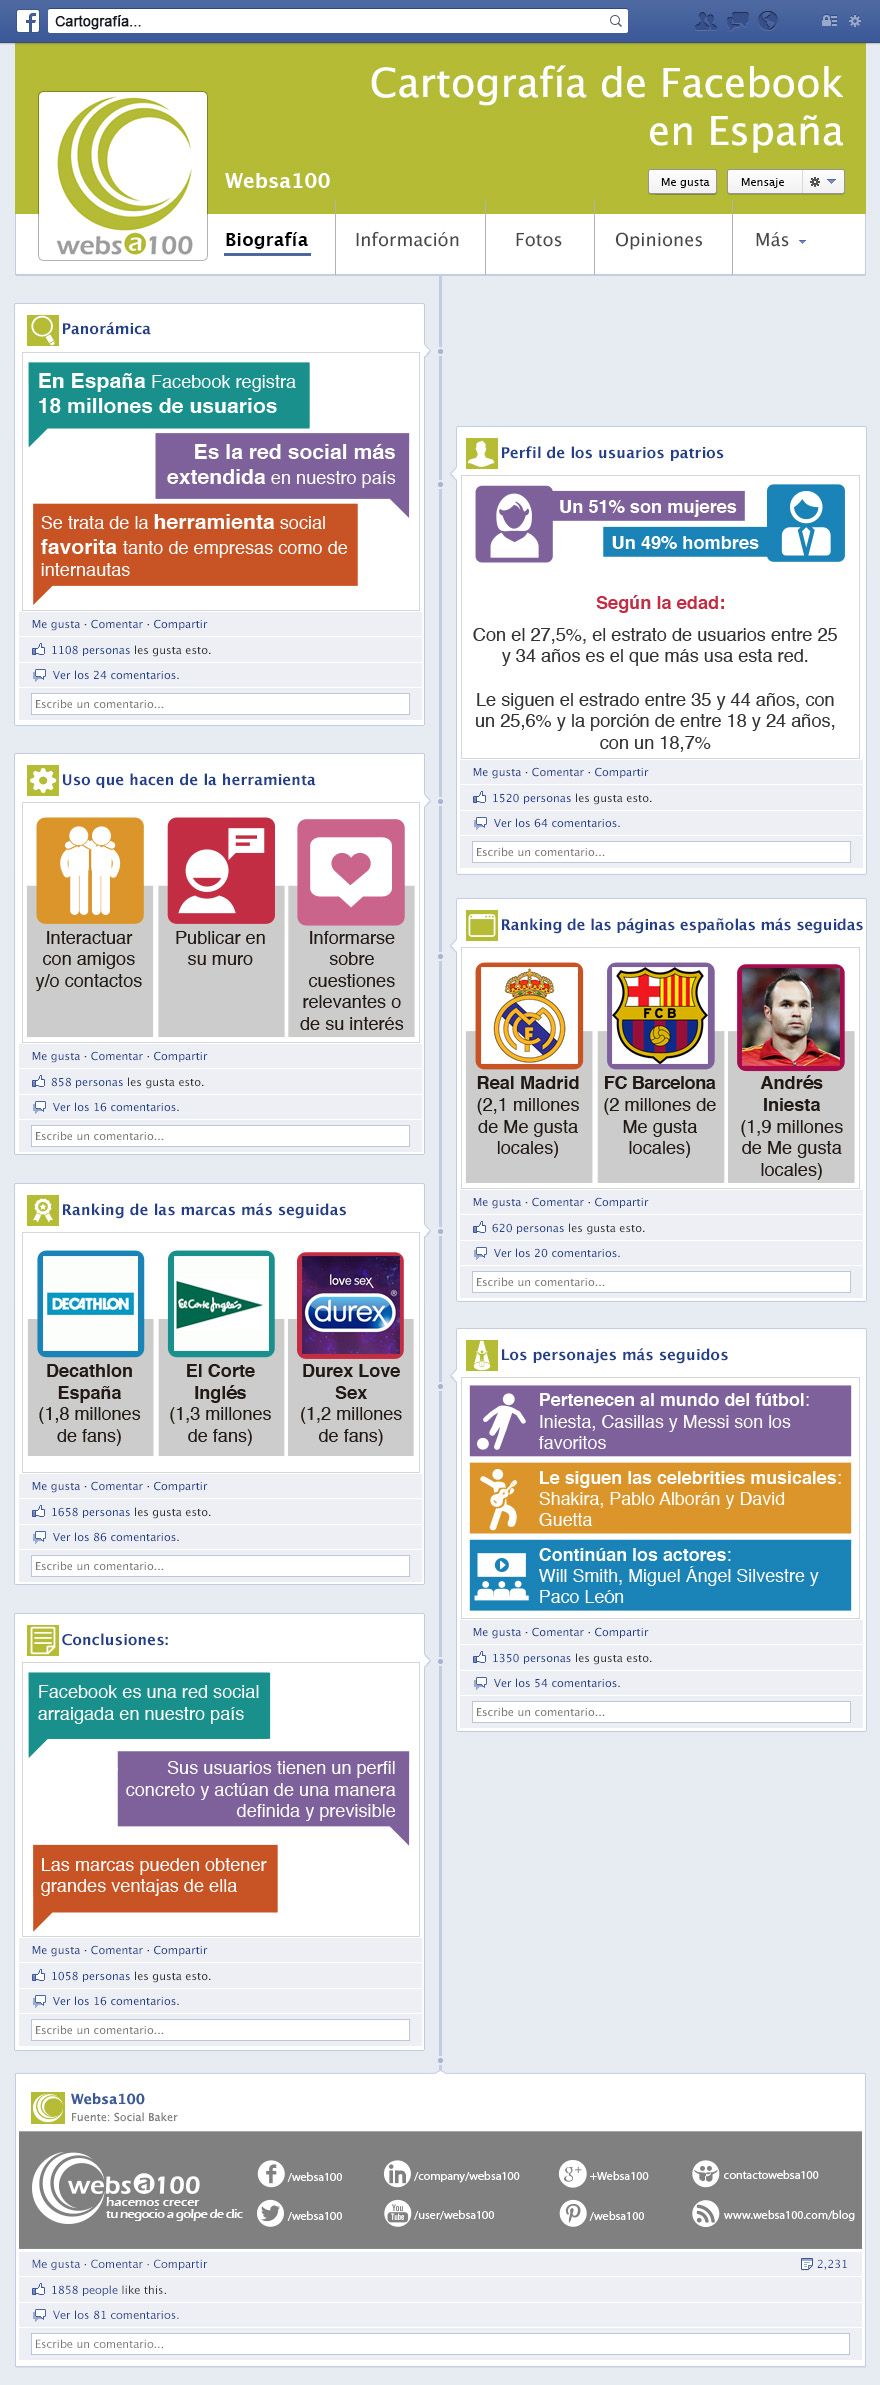 Cartografía de Facebook en España